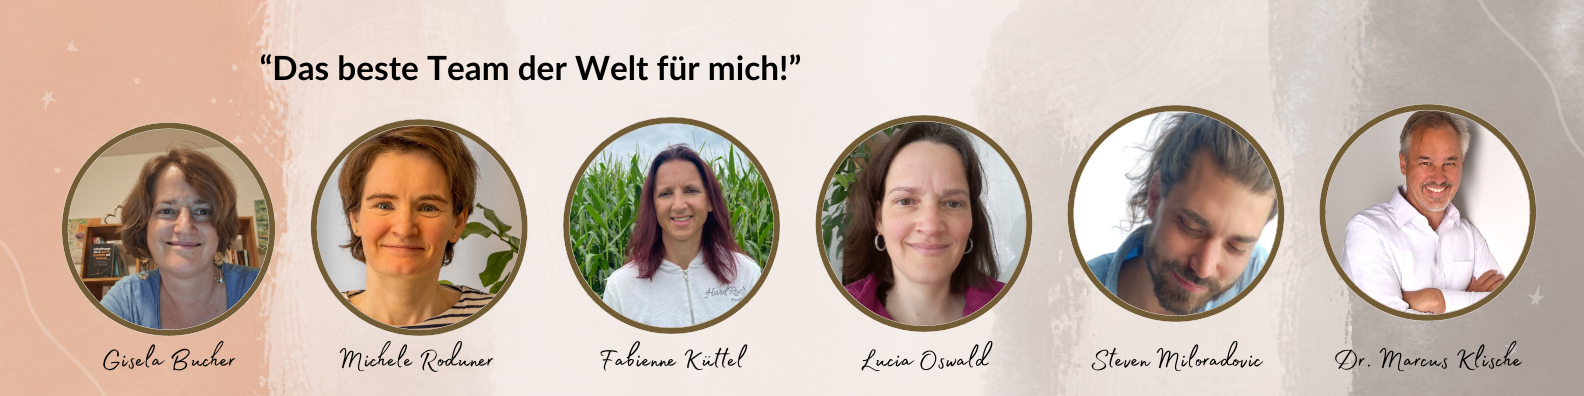 Kontaktformular unserer TCM Praxis - Gisela Bucher und Team